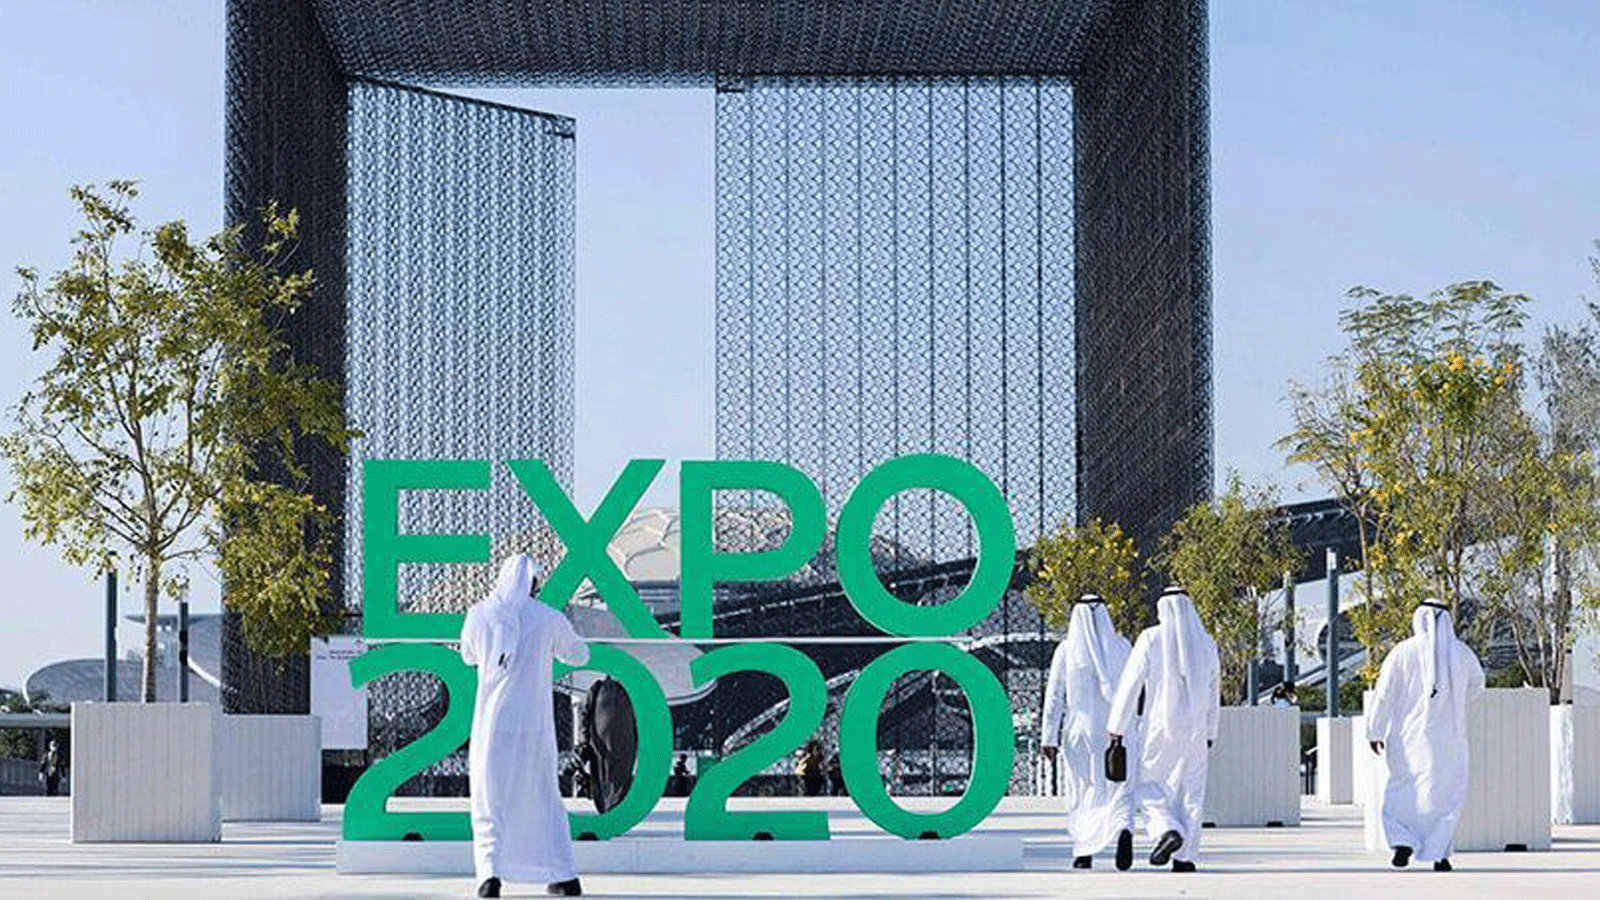 الإعلان الرسمي لمعرض دبي إكسبو 2020 بالقرب من جناح الاستدامة في دبي